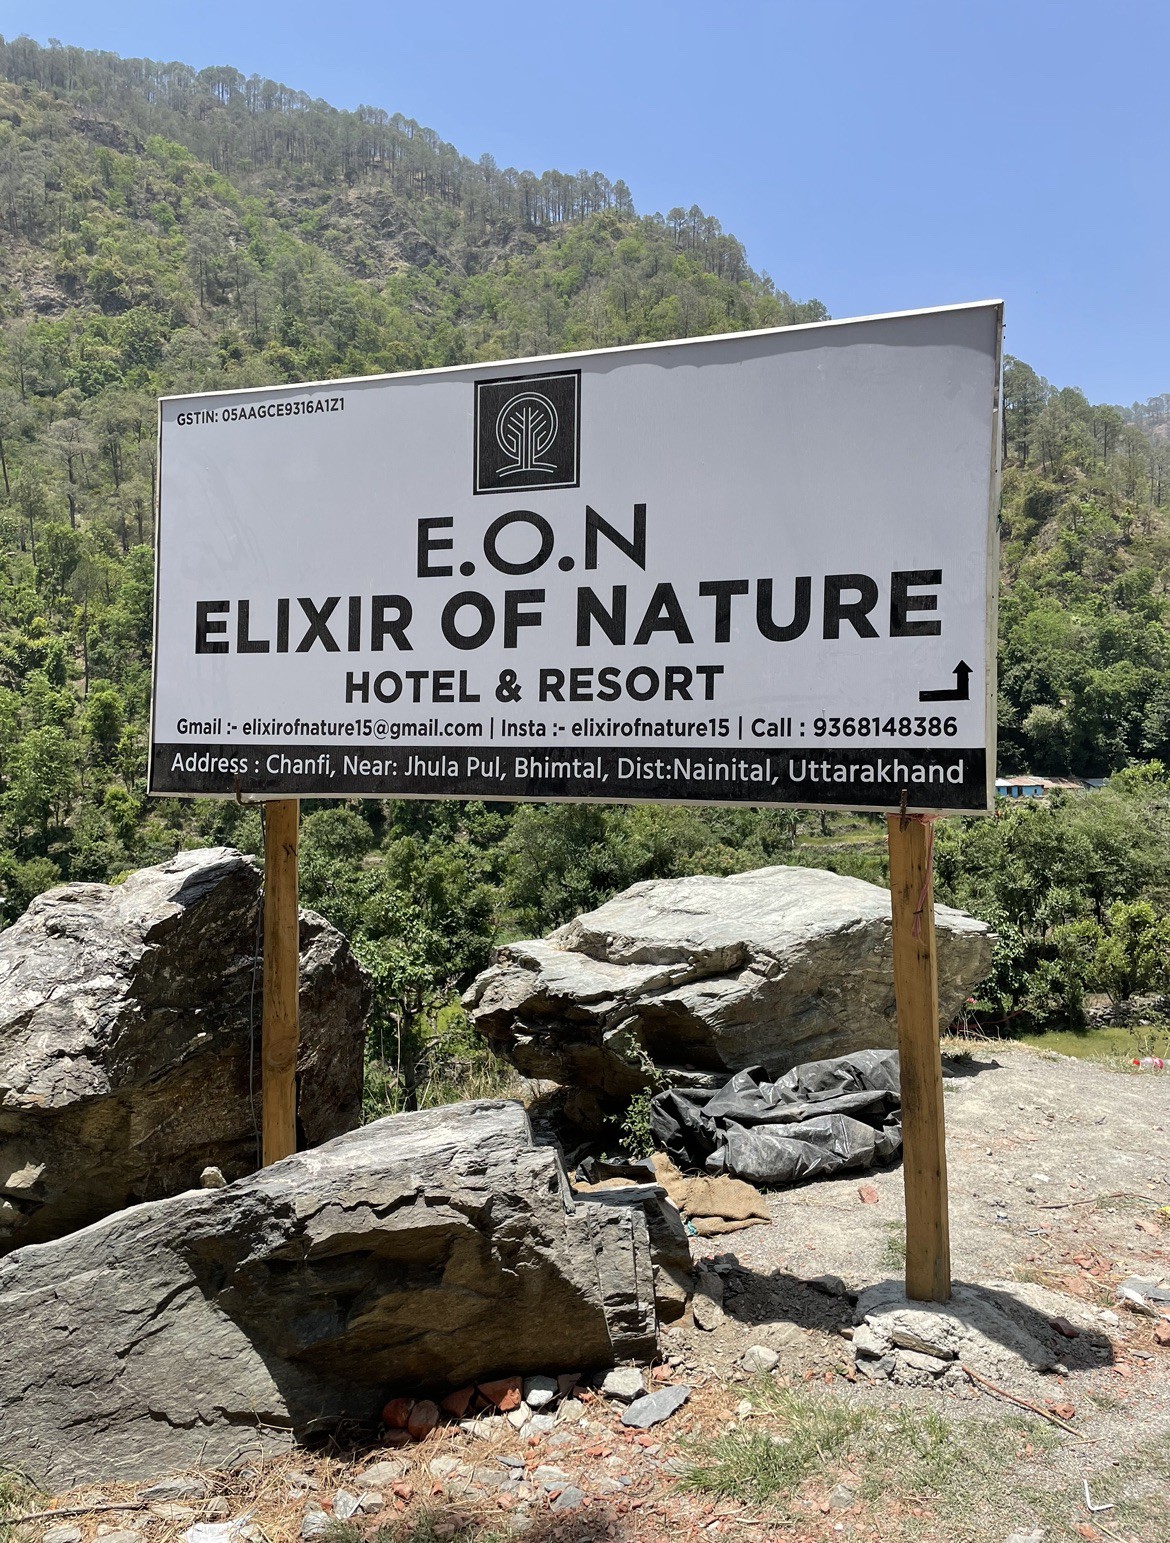 Elixir of nature